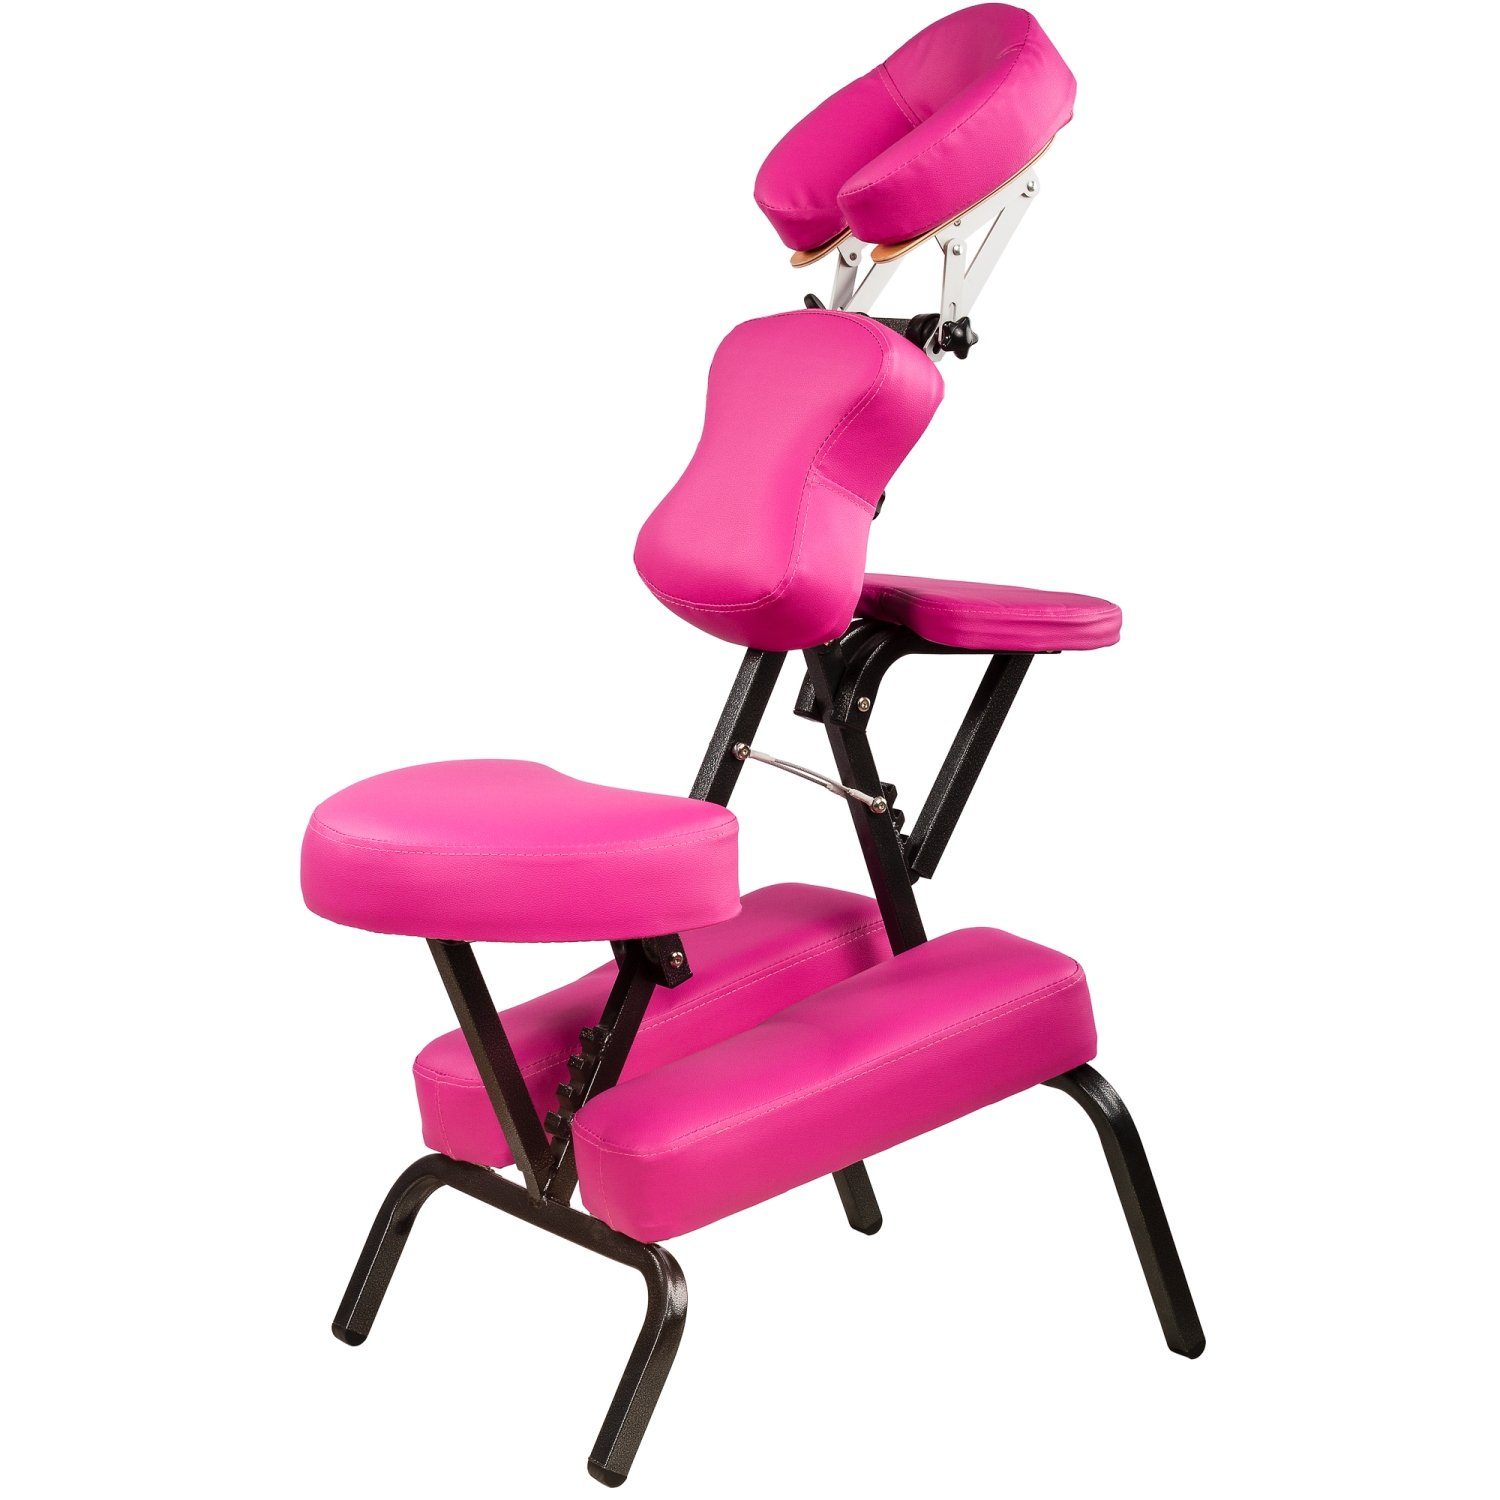 MOVIT Massagesessel Movit® Klappbarer Massagestuhl/Tattoo Stuhl, inkl. Tasche, belastbar bis 200 kg, Farbwahl, schadstoffgeprüft Pink | Massagesessel